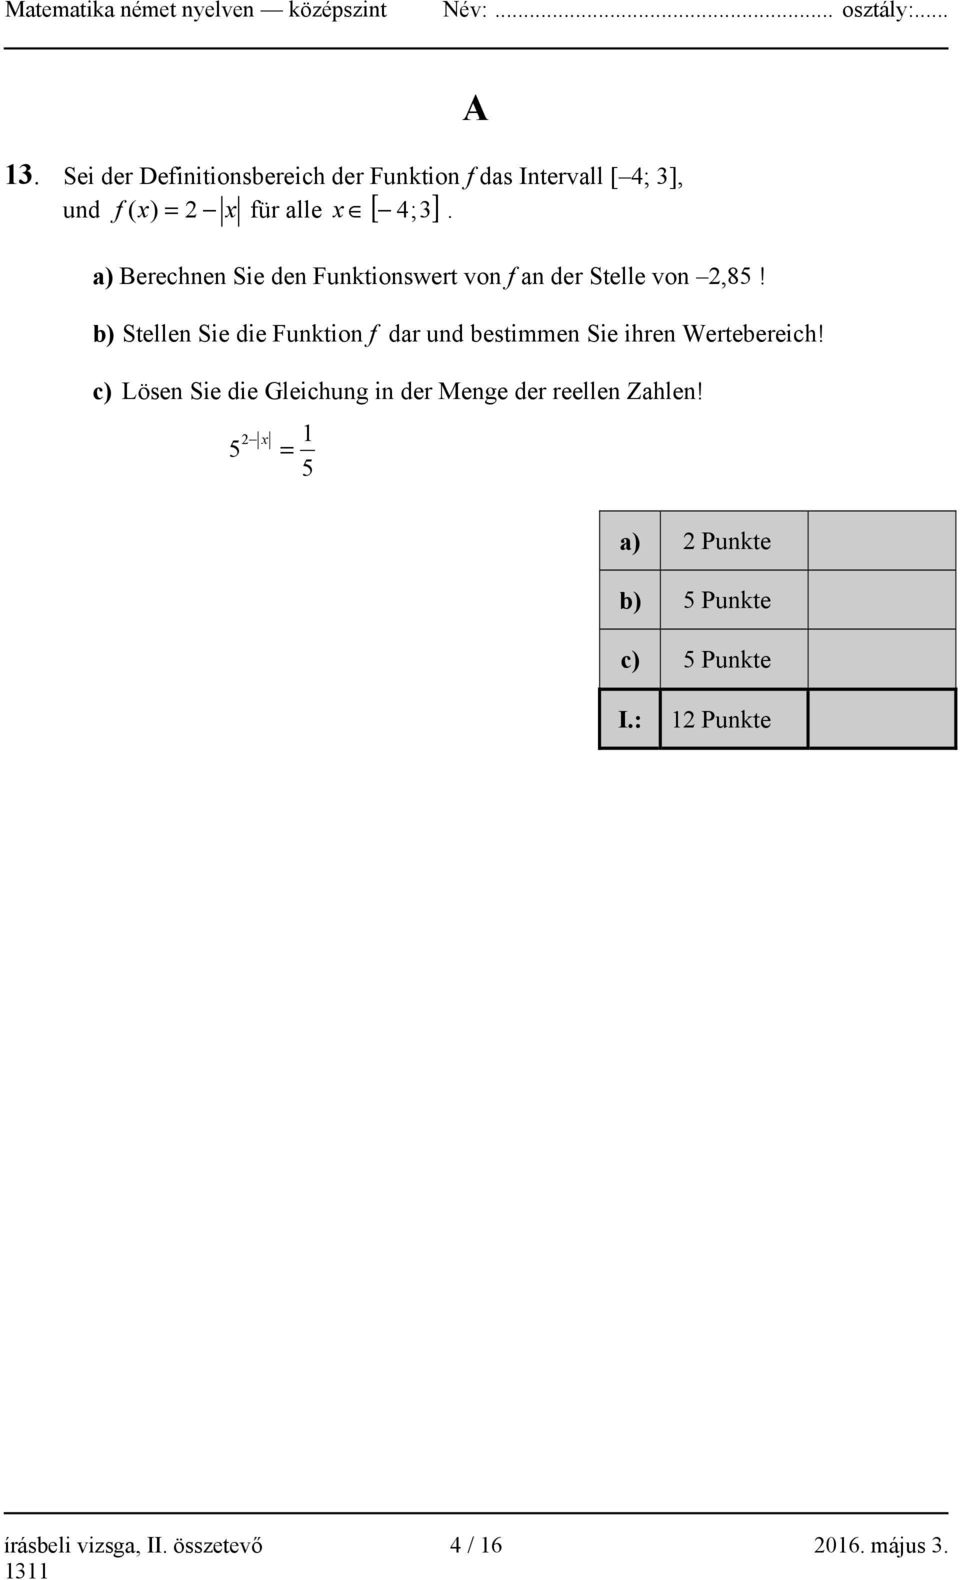 b) Stellen Sie die Funktion f dar und bestimmen Sie ihren Wertebereich!